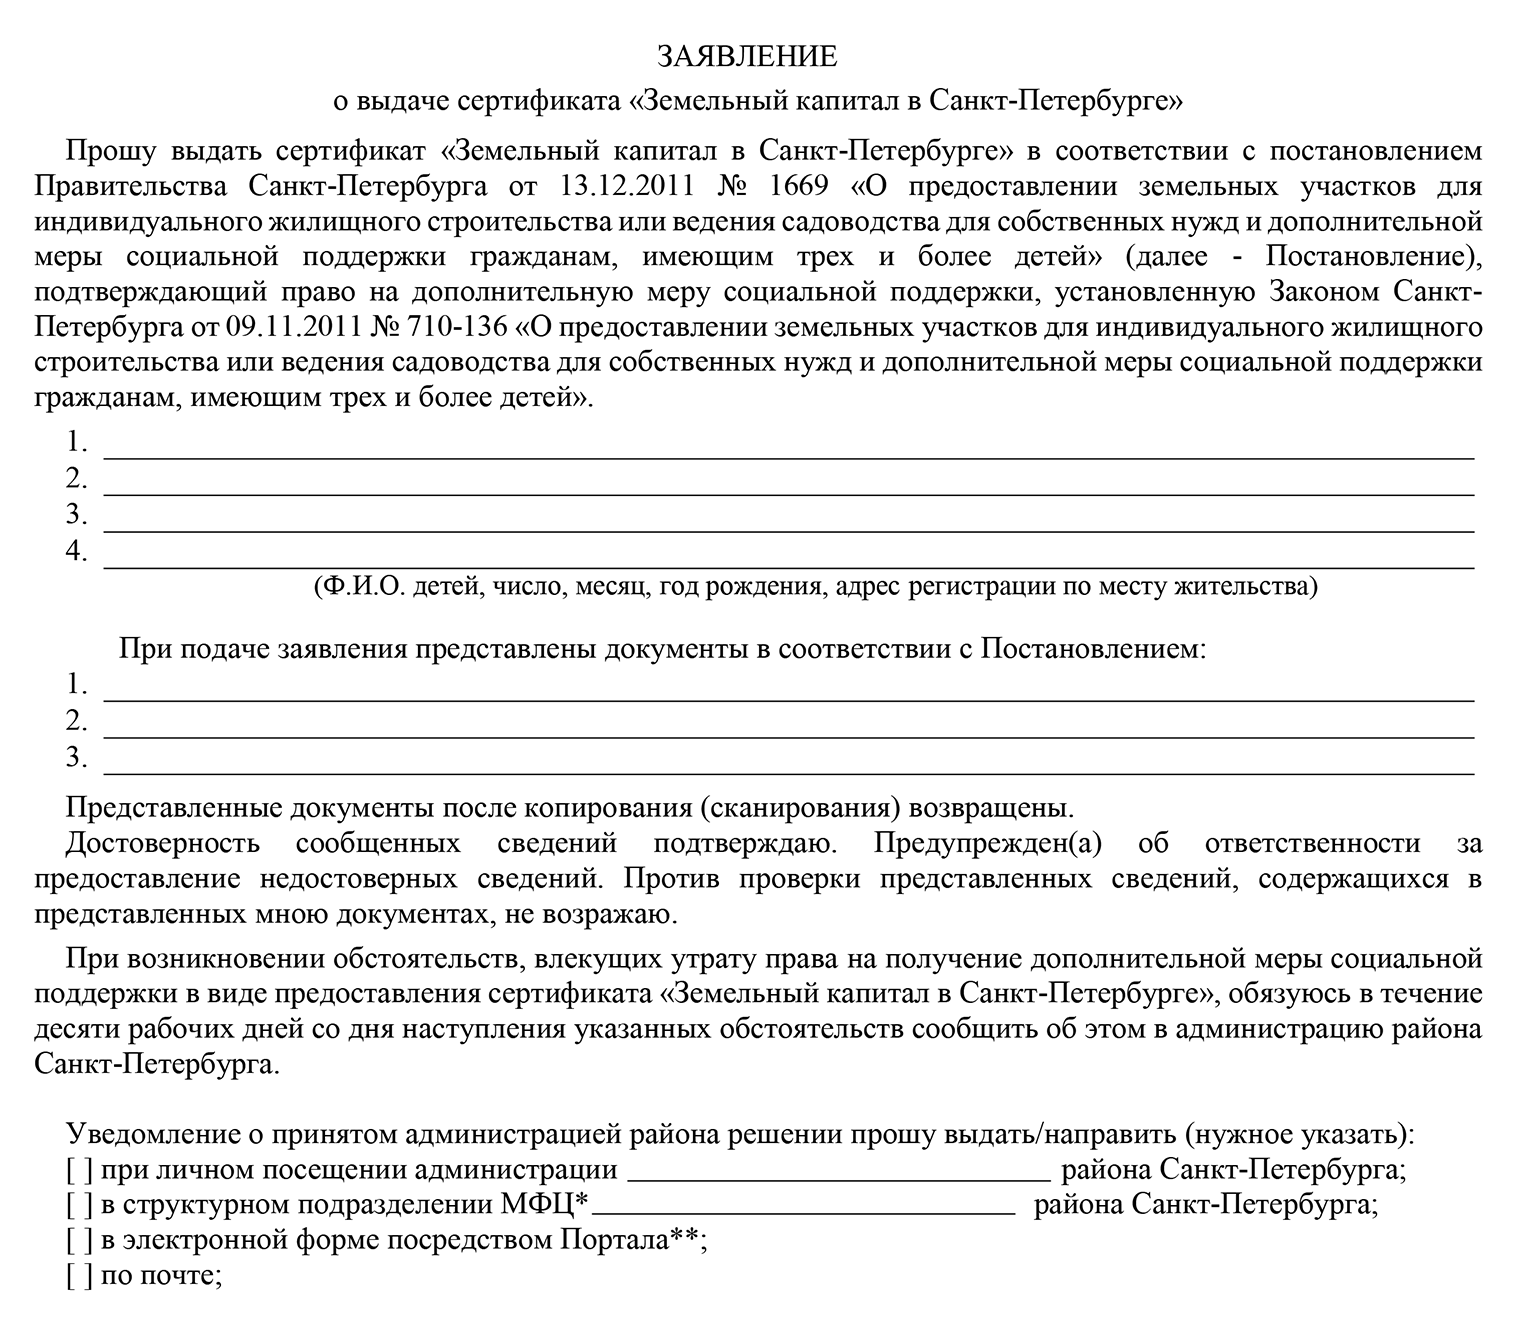 Так выглядит заявление на выдачу земельного сертификата в Санкт-Петербурге, в документе заявитель указывает список прилагаемых документов и удобный способ оповещения о решении — по электронной почте, в смс или при личной явке в администрацию